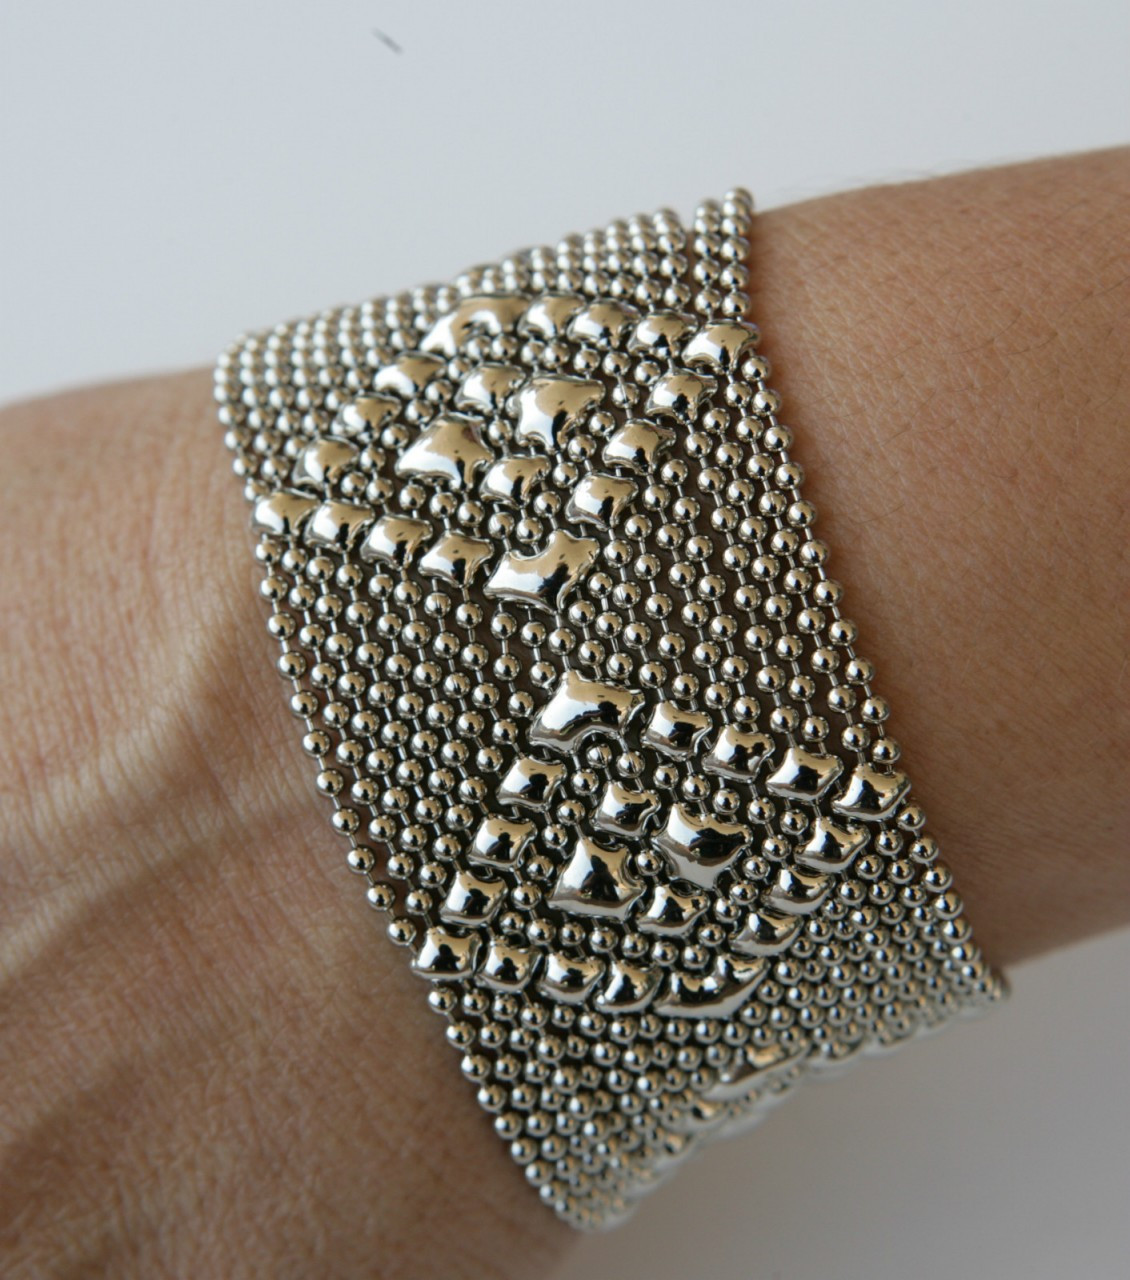 Silver Ball Chain Bracelet – Dandelion Jewelry